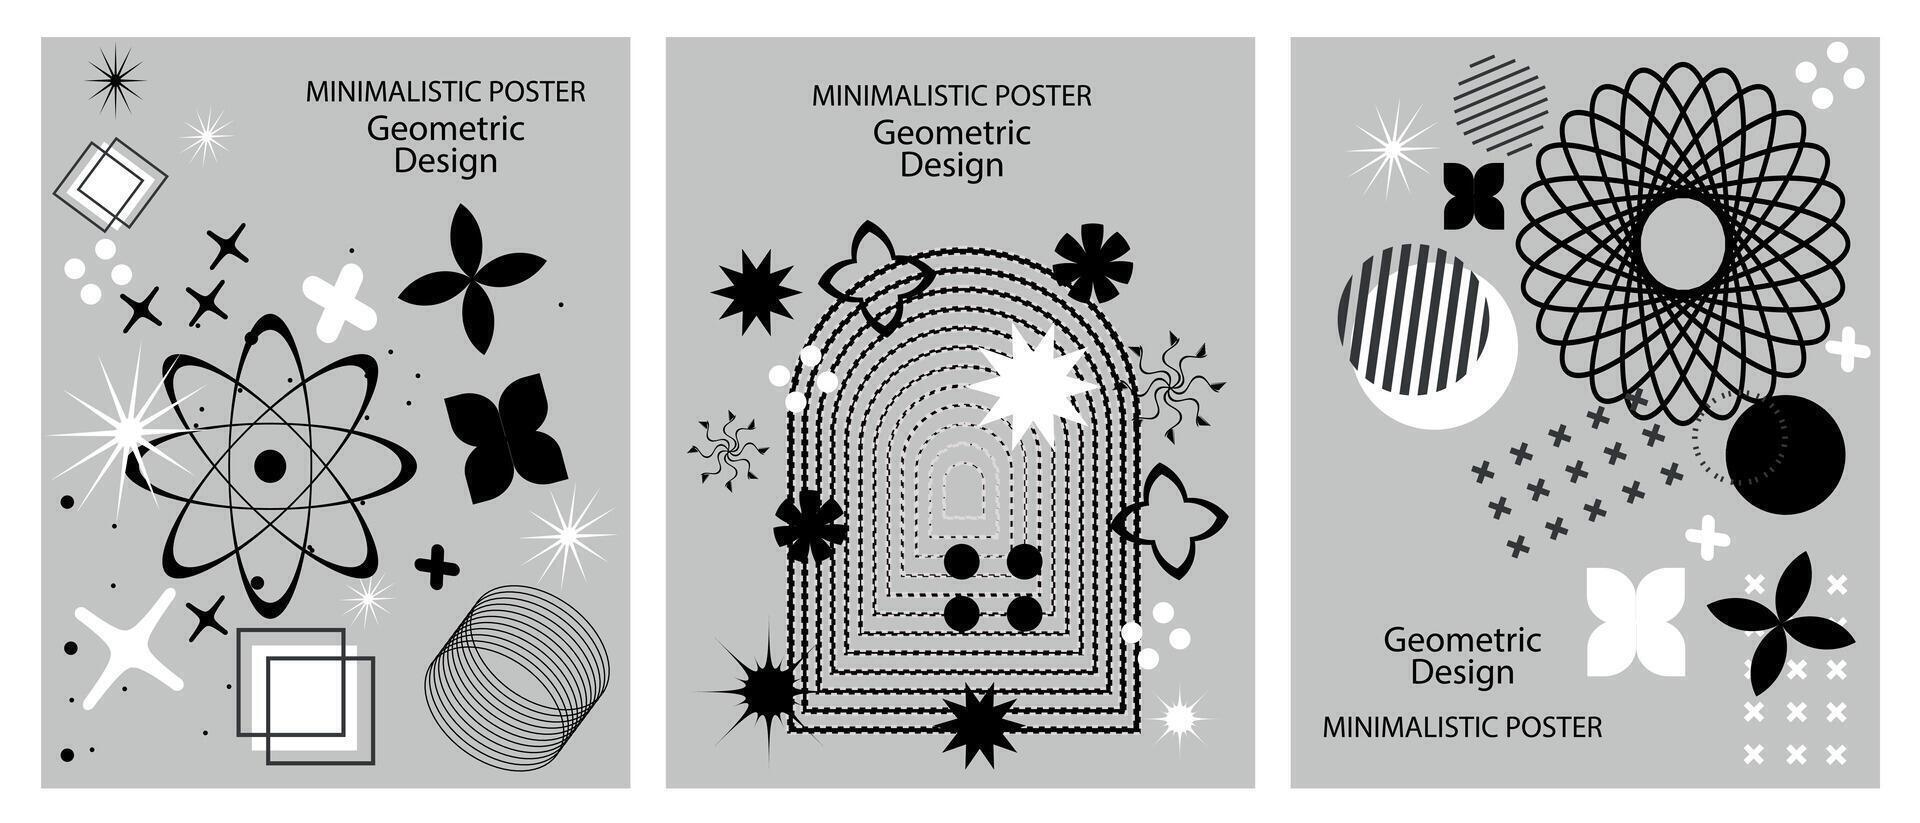 retro futuristisch minimalistisch Plakate mit einfach Formen, Grafik Elemente von geometrisch Formen Komposition. das Konzept von modern Brutalismus. Vektor Illustration.